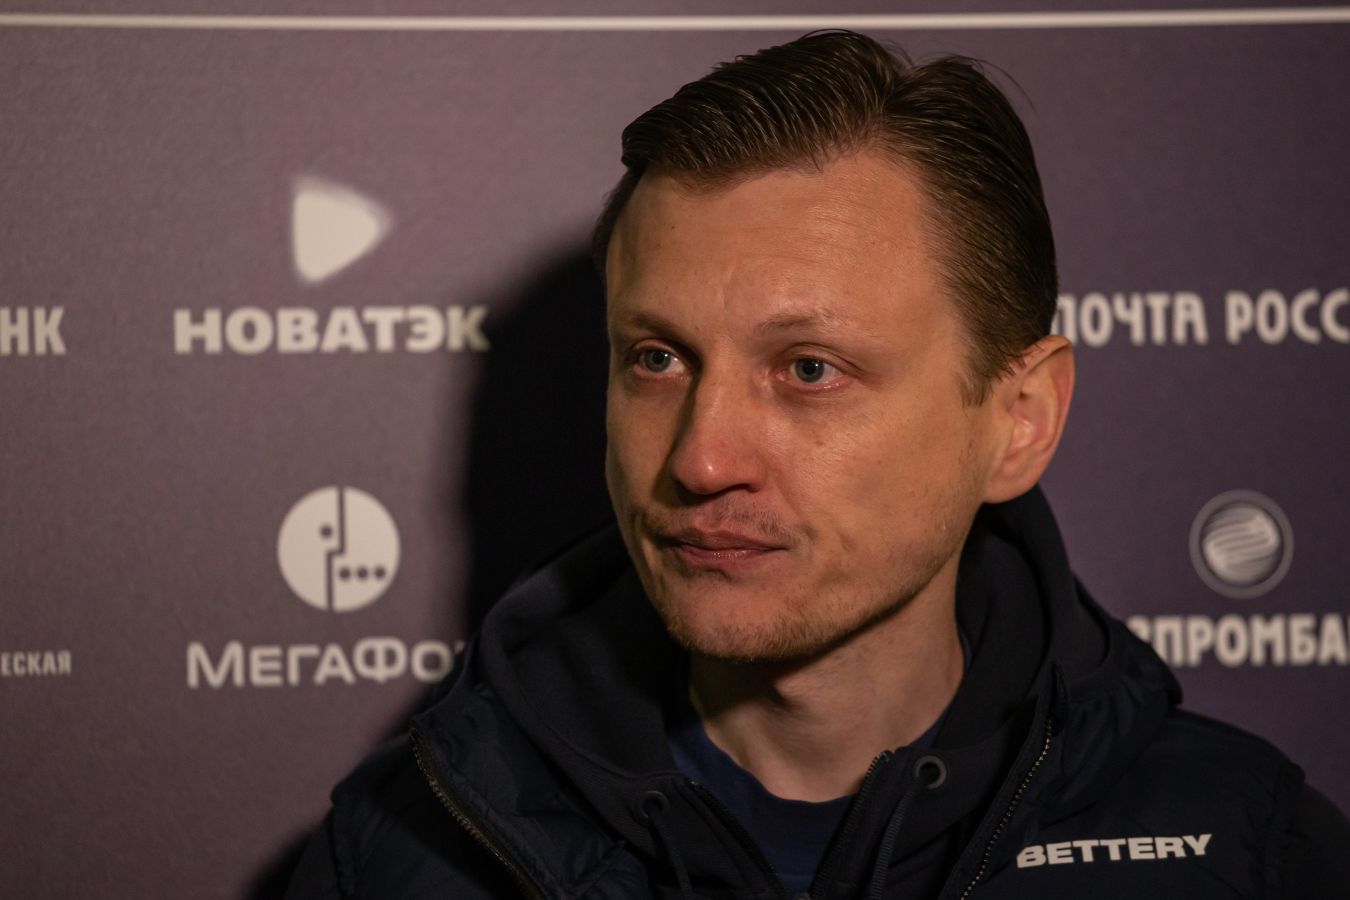 Галактионов прокомментировал победу в кубковом матче с «Пари Нижний Новгород»